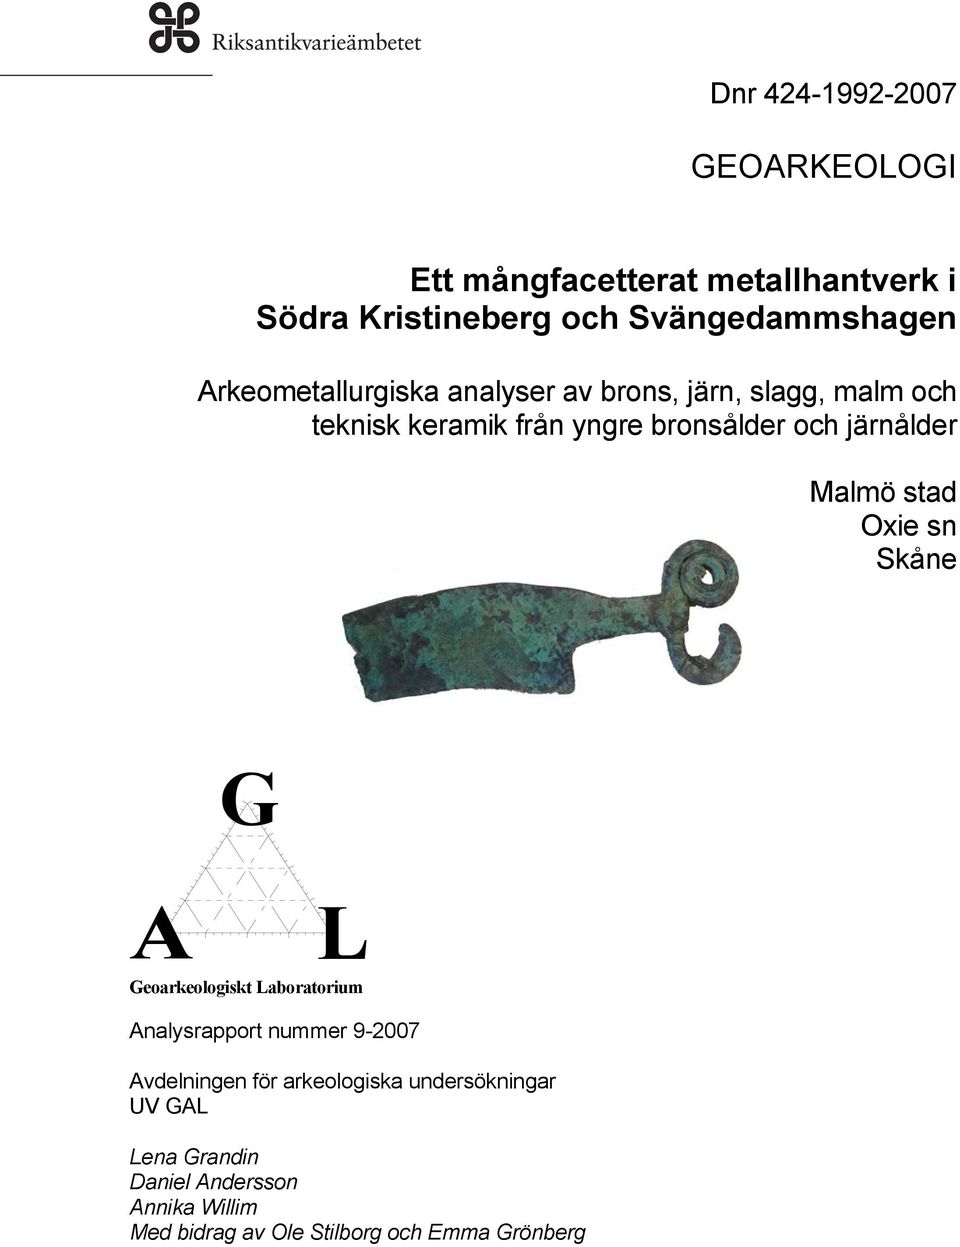 Malmö stad Oxie sn Skåne G A L Geoarkeologiskt Laboratorium Analysrapport nummer 9-2007 Avdelningen för